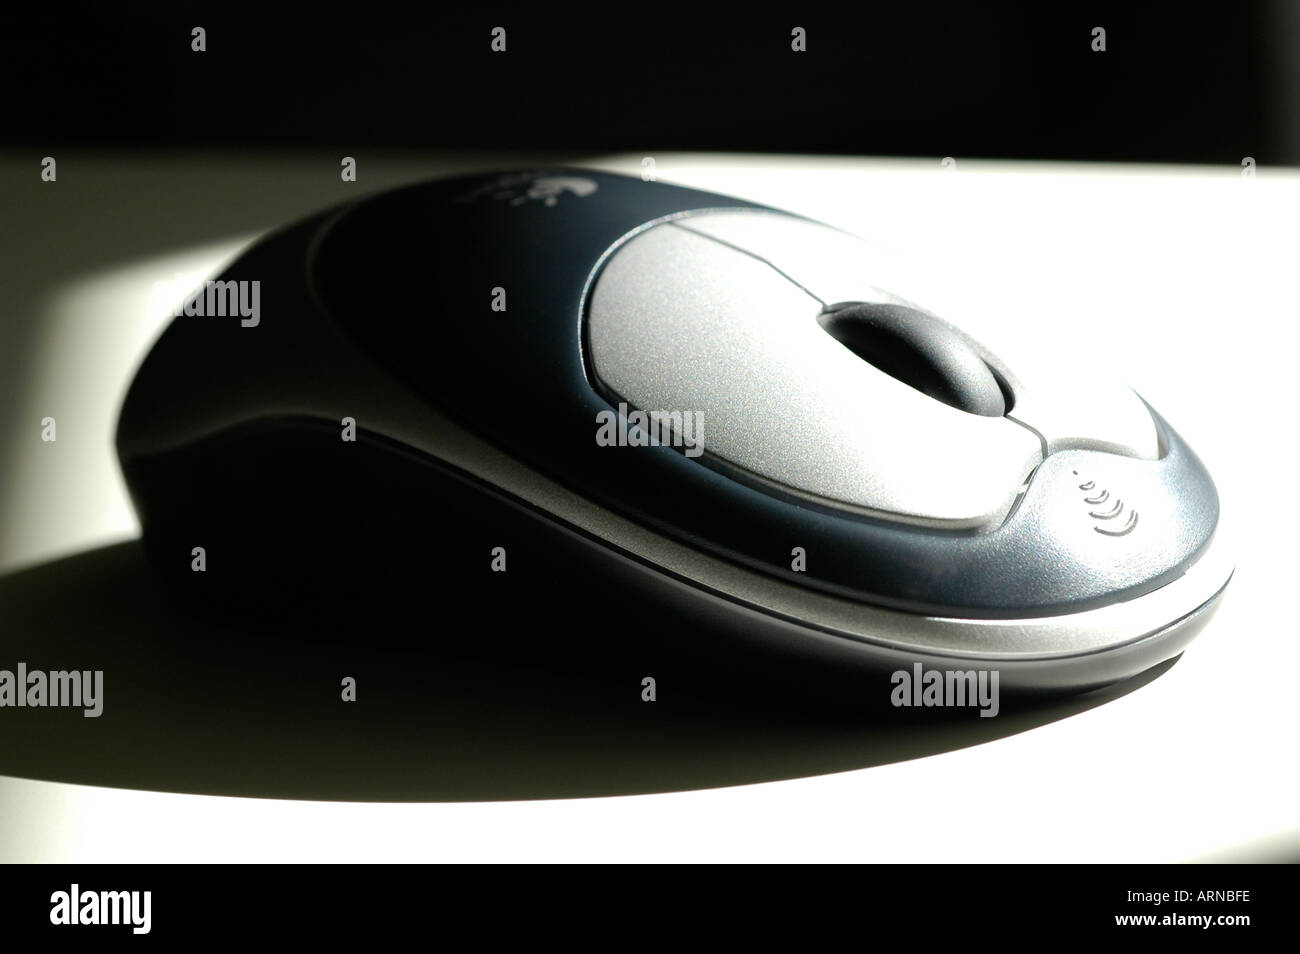 Une souris d'ordinateur sans fil contemporaine avec deux boutons et une molette qui peut aussi agir comme un troisième bouton Banque D'Images